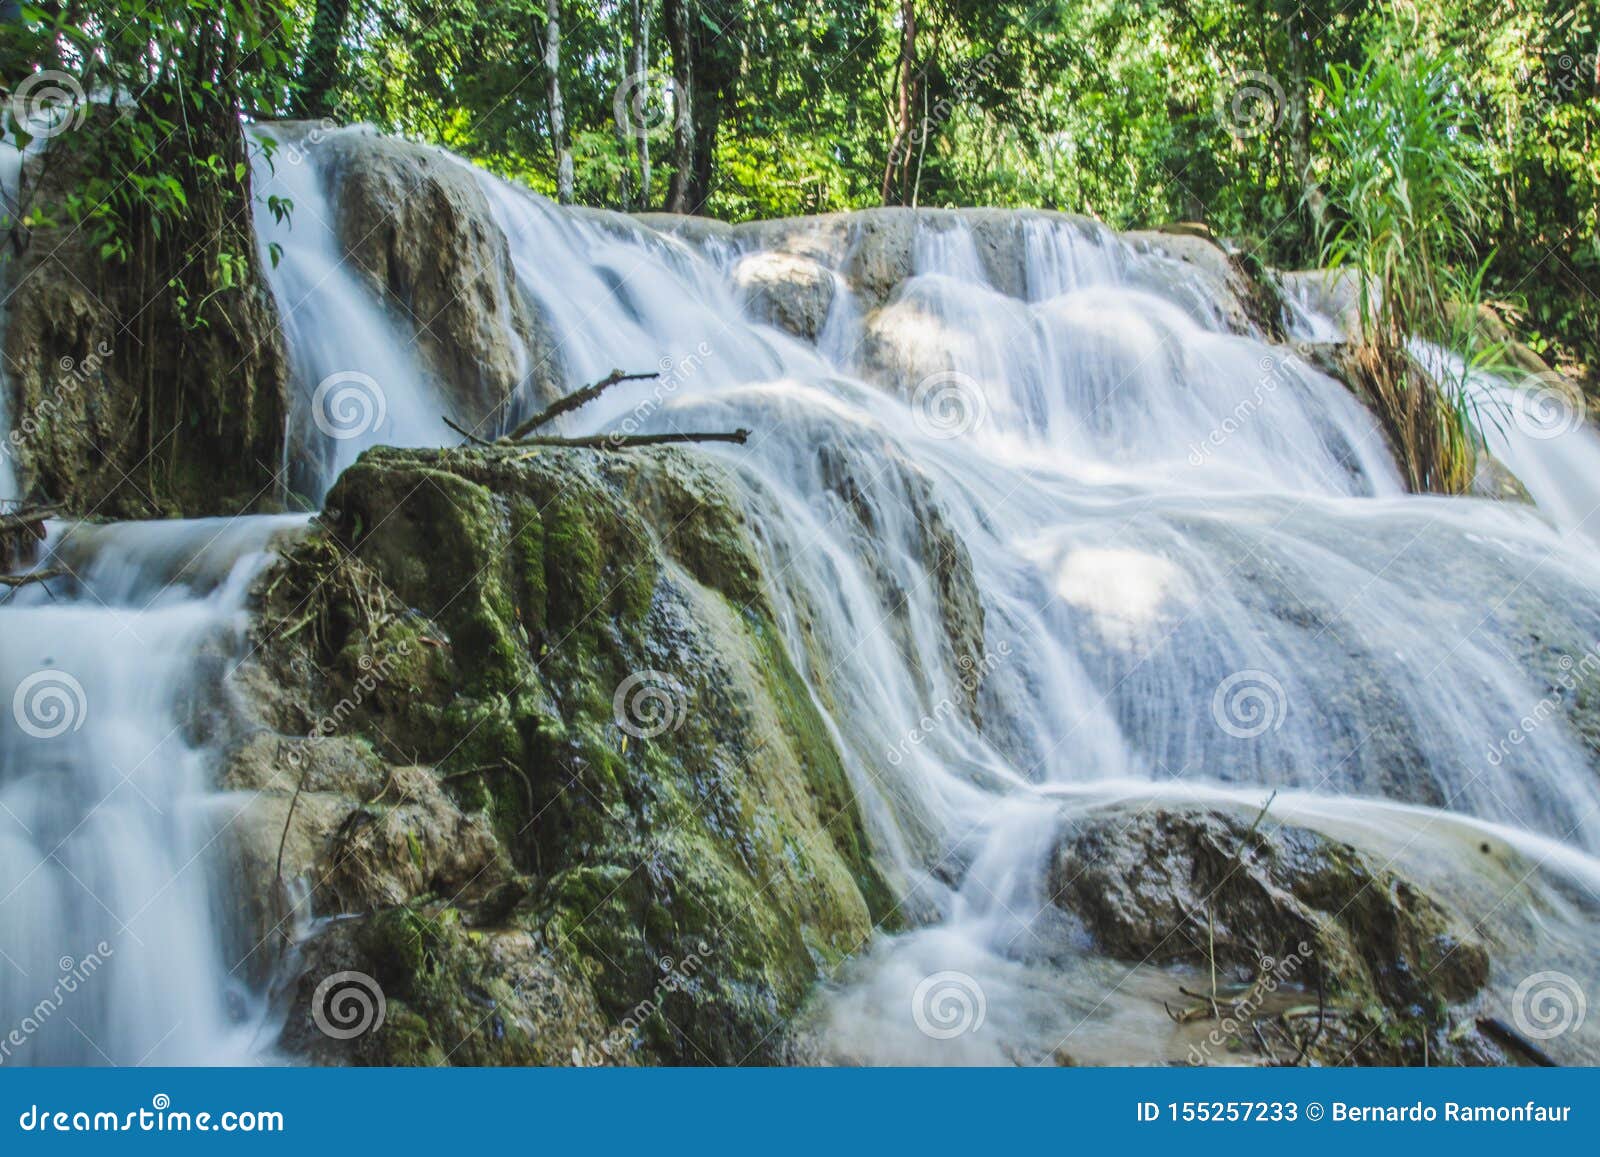 waterfalls of cascadas de agua azul chiapas mexico